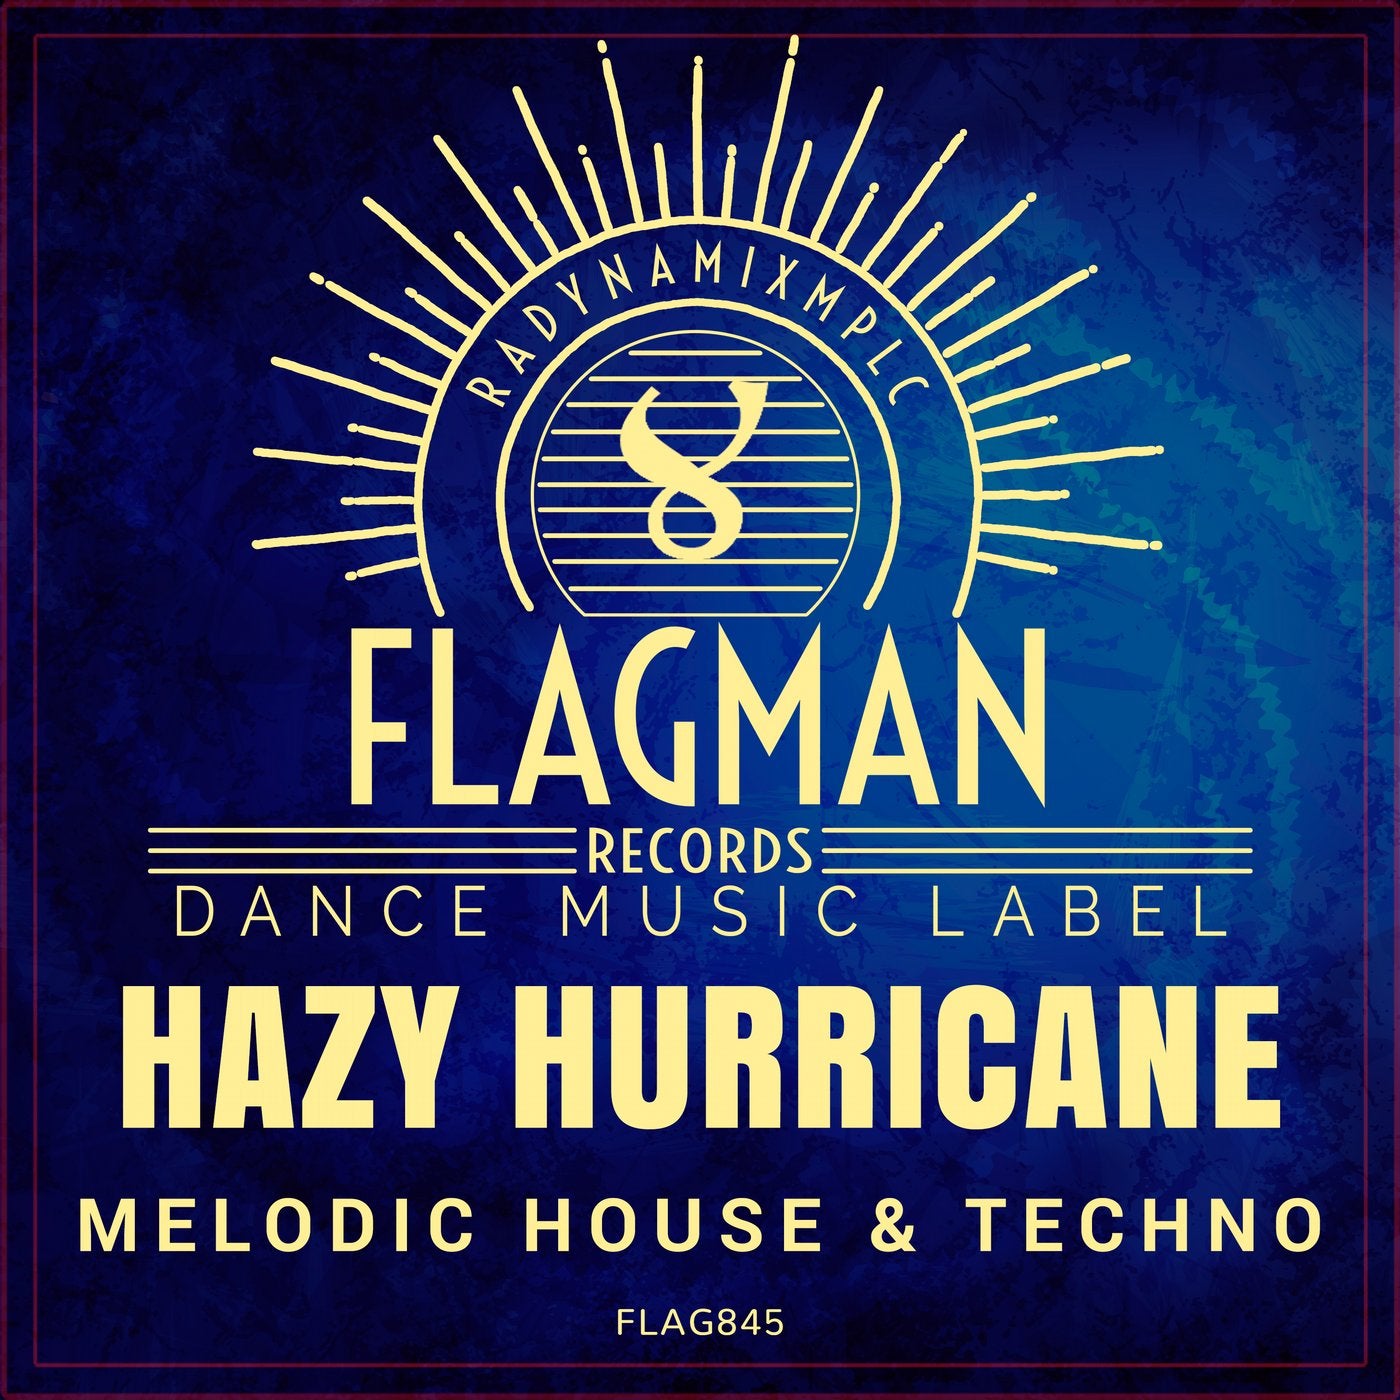 Hazy Hurricane Melodic House & Techno